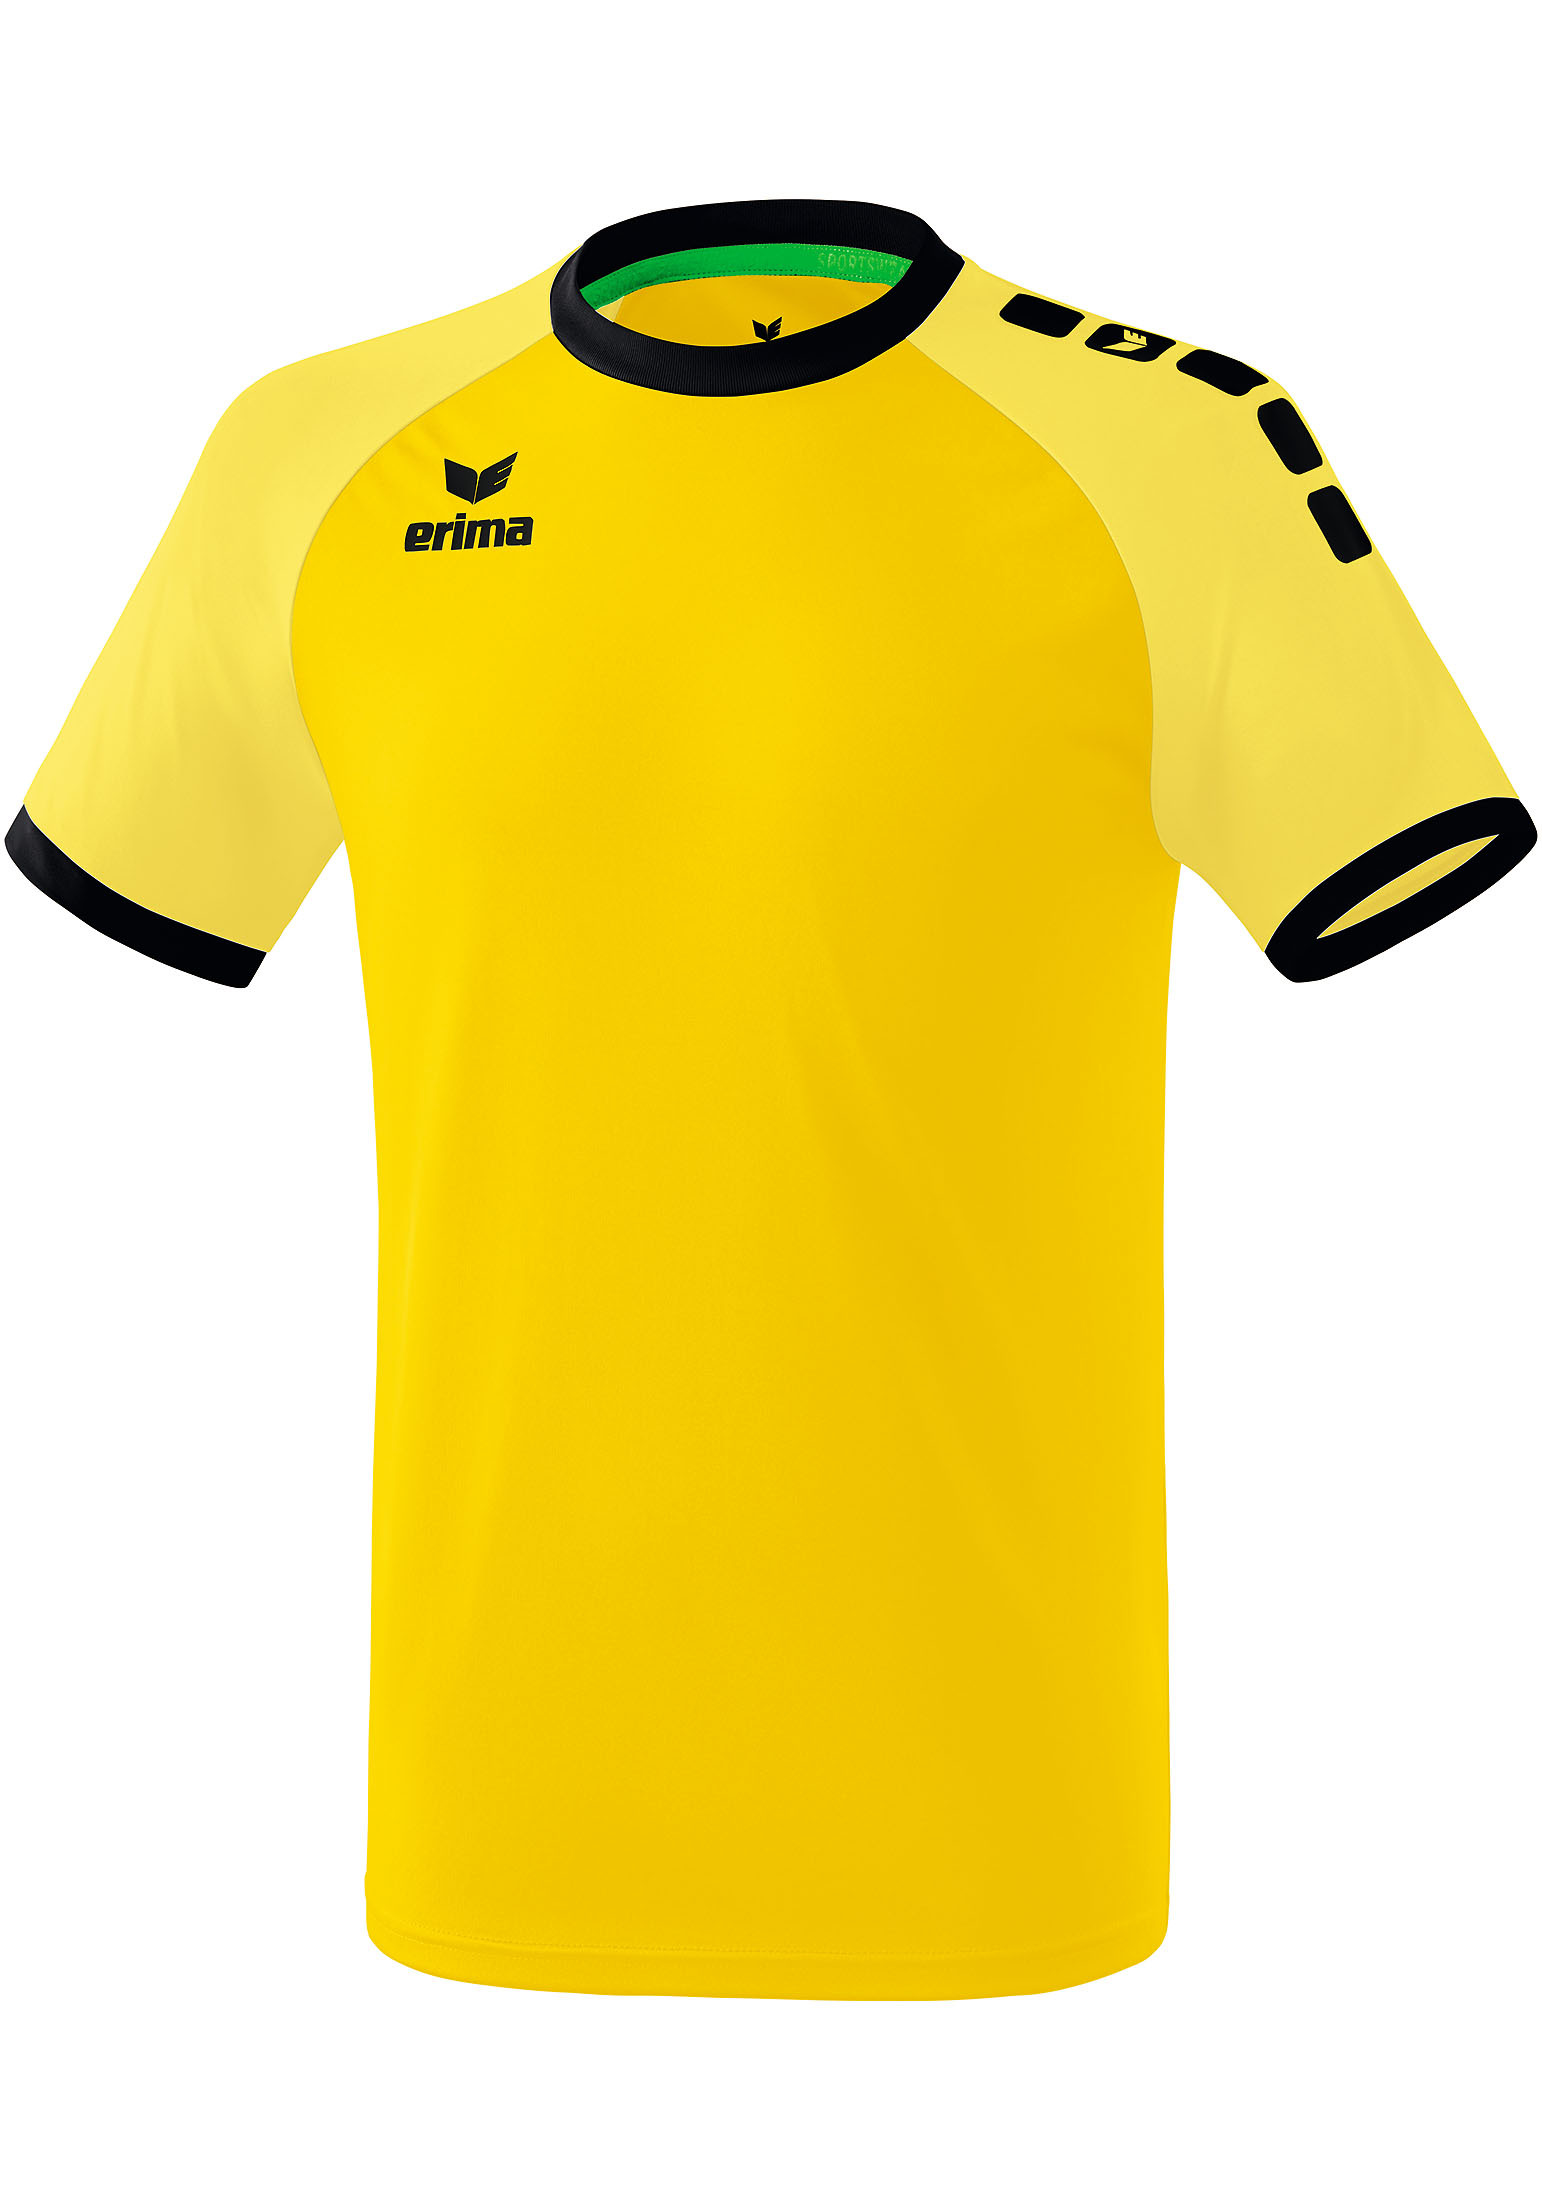 Спортивная футболка erima Zenari 3.0 Trikot, желтый рубашка erima zenari 3 0 trikot серый меланж черный темно серый